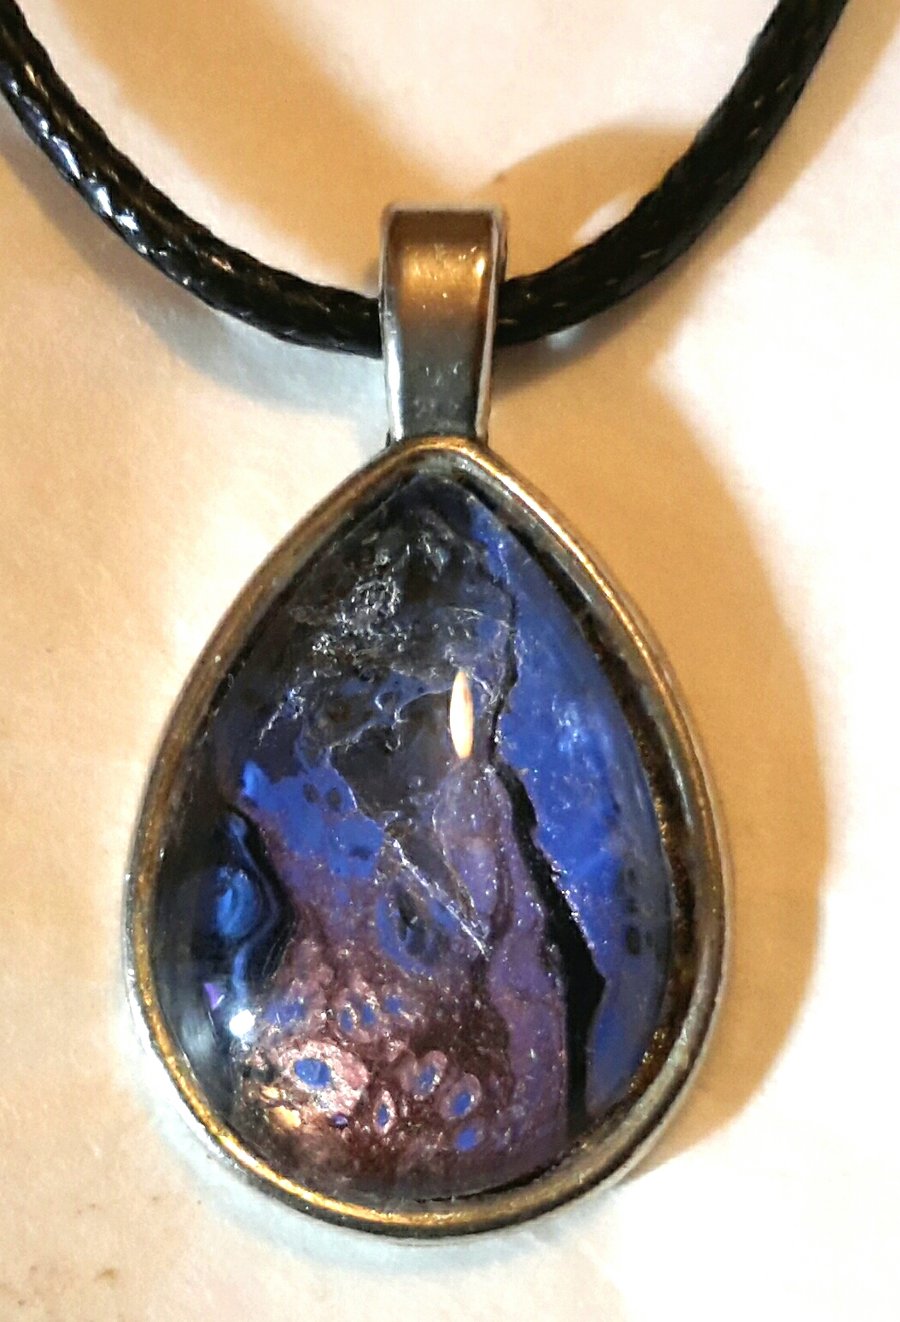 Handmade blue and purple fluid art teardrop pendant.